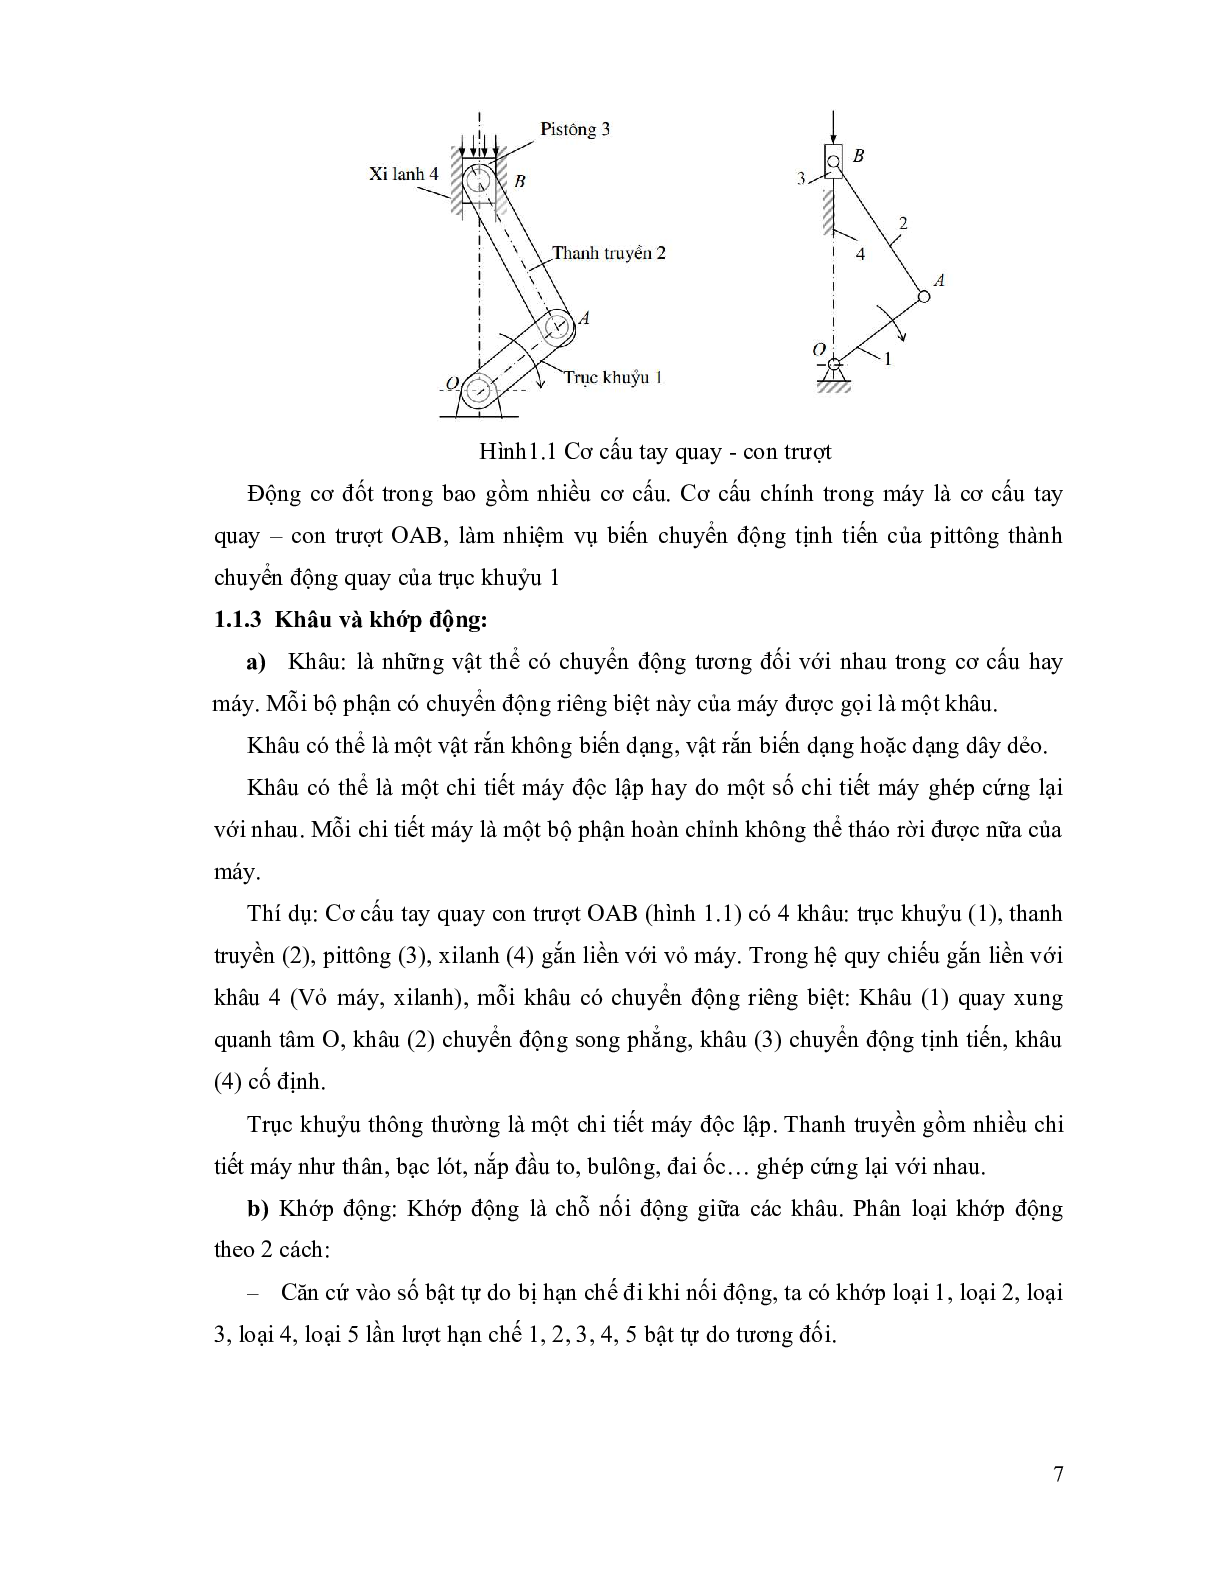 Giáo trình môn Nguyên lý - Chi tiết máy | Cao đẳng Giao thông vận tải Thành phố Hồ Chí Minh (trang 6)